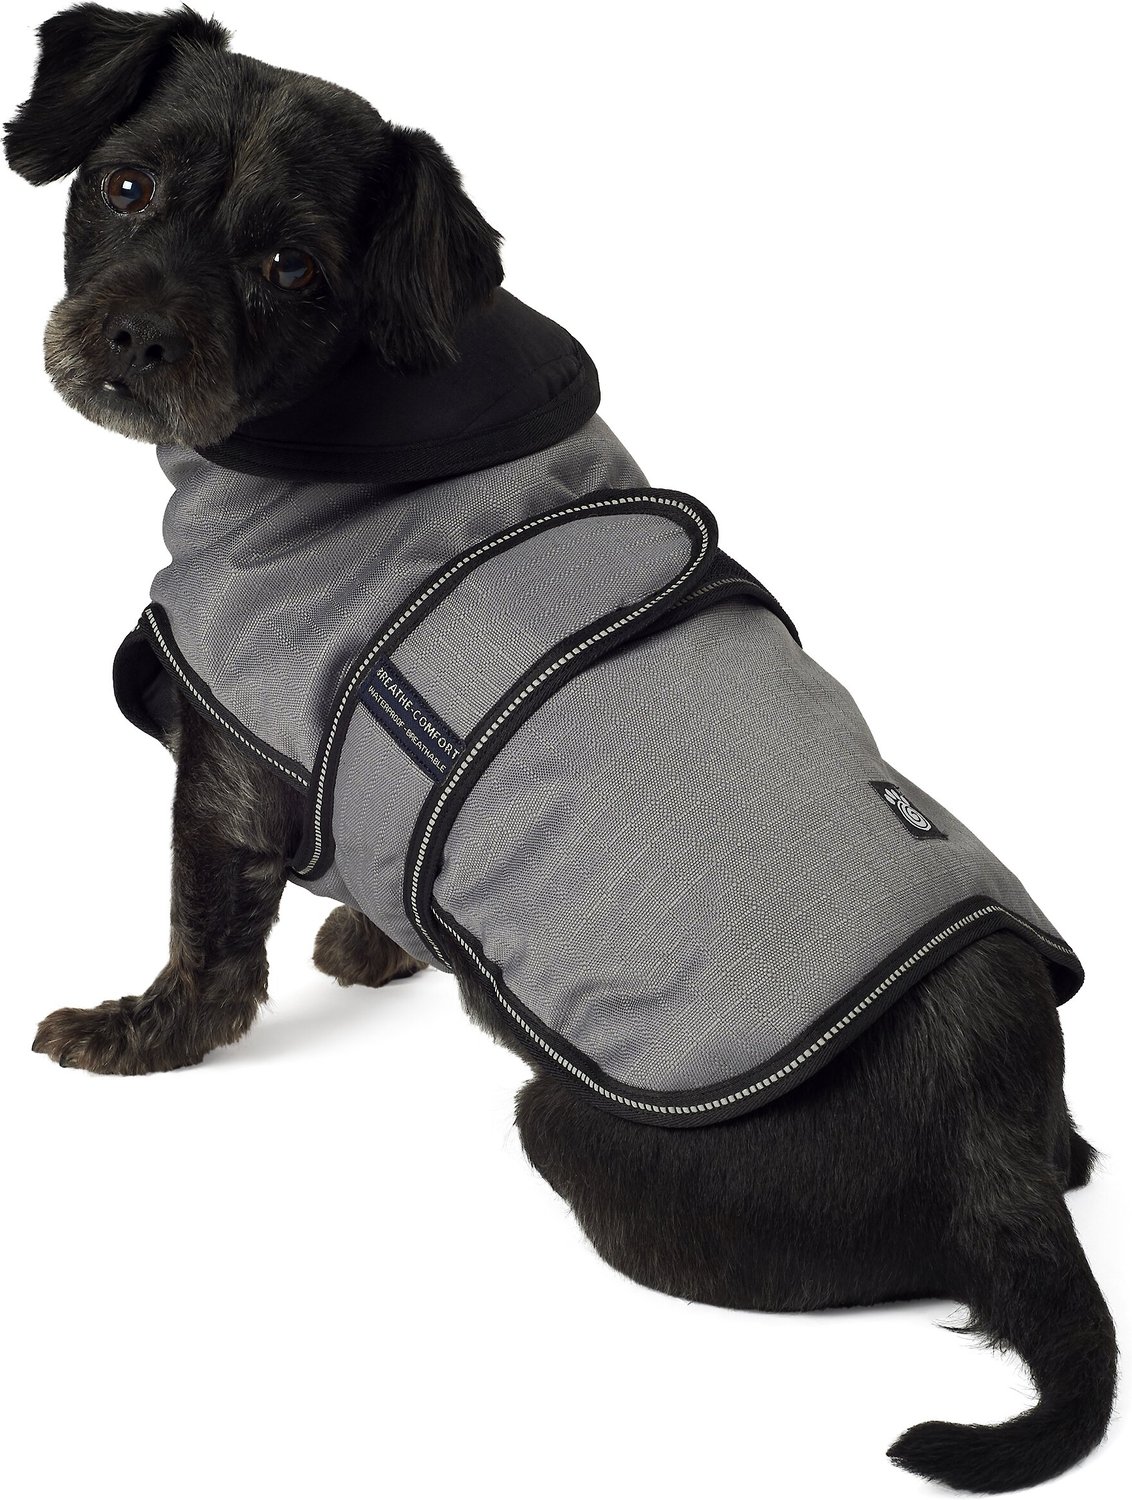 insulated dog jacket